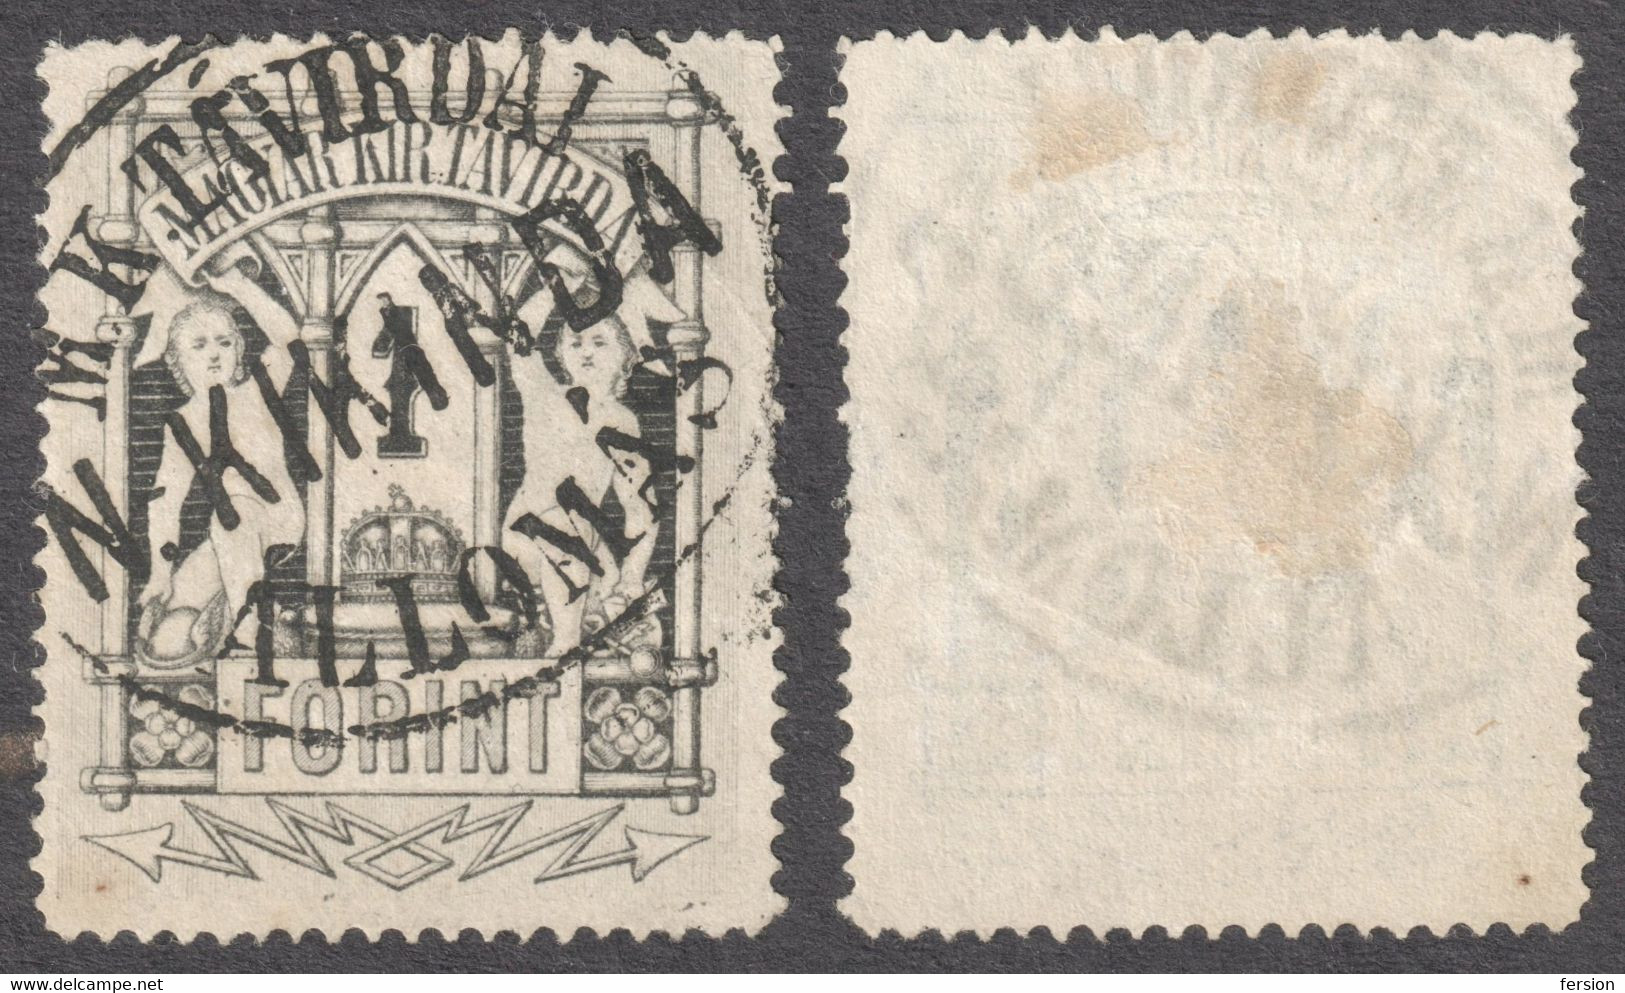 Kikinda Nagykikinda Postmark Serbia - TELEGRAPH Telegram TAX Stamp - 1873 HUNGARY - Copper Print 1 Ft - Used - Telegrafi